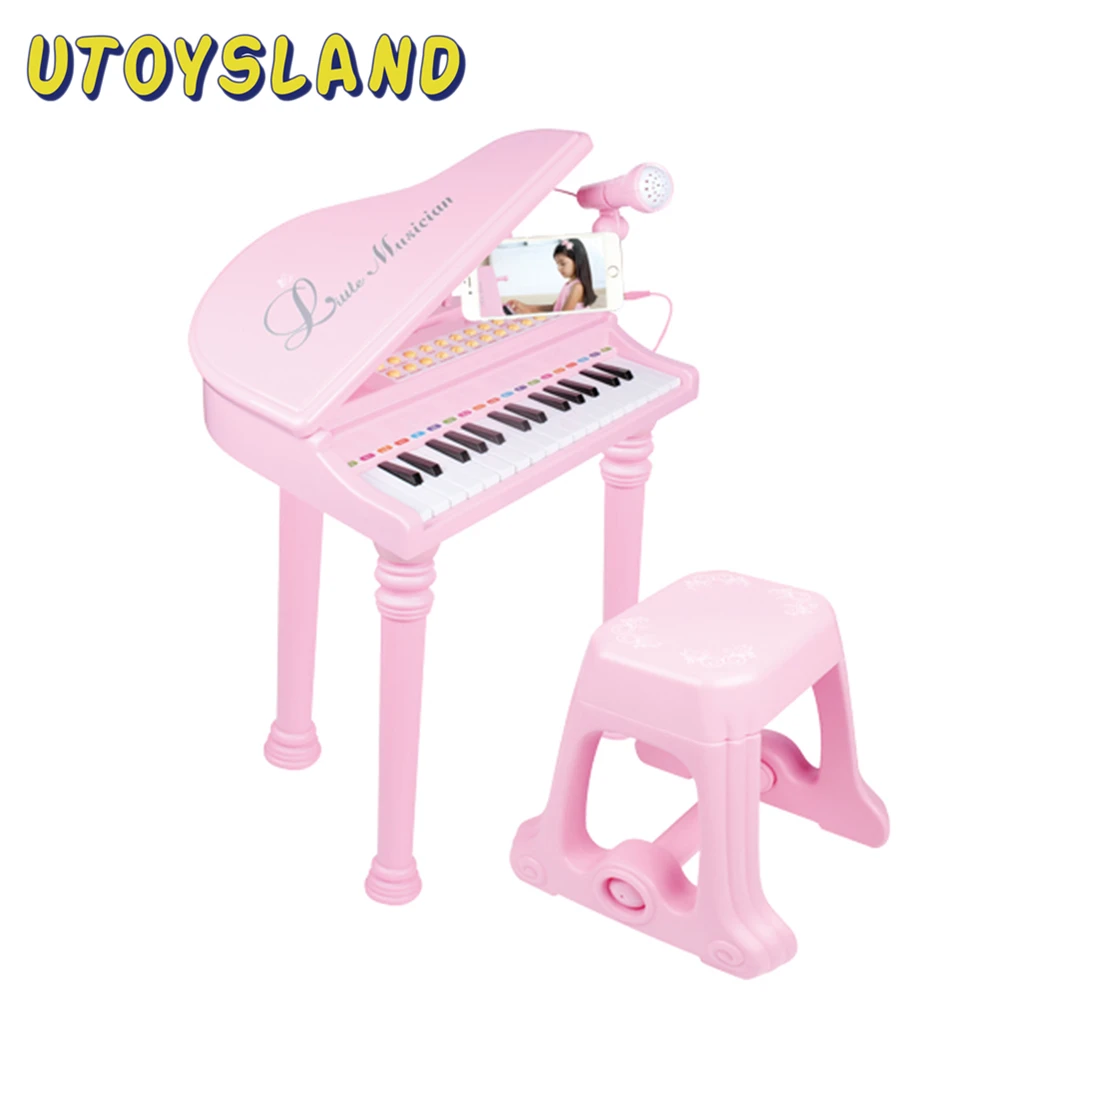 Pianoforti Strumenti Musicali Accessori Miniature Piano Giocattoli Bambini per 